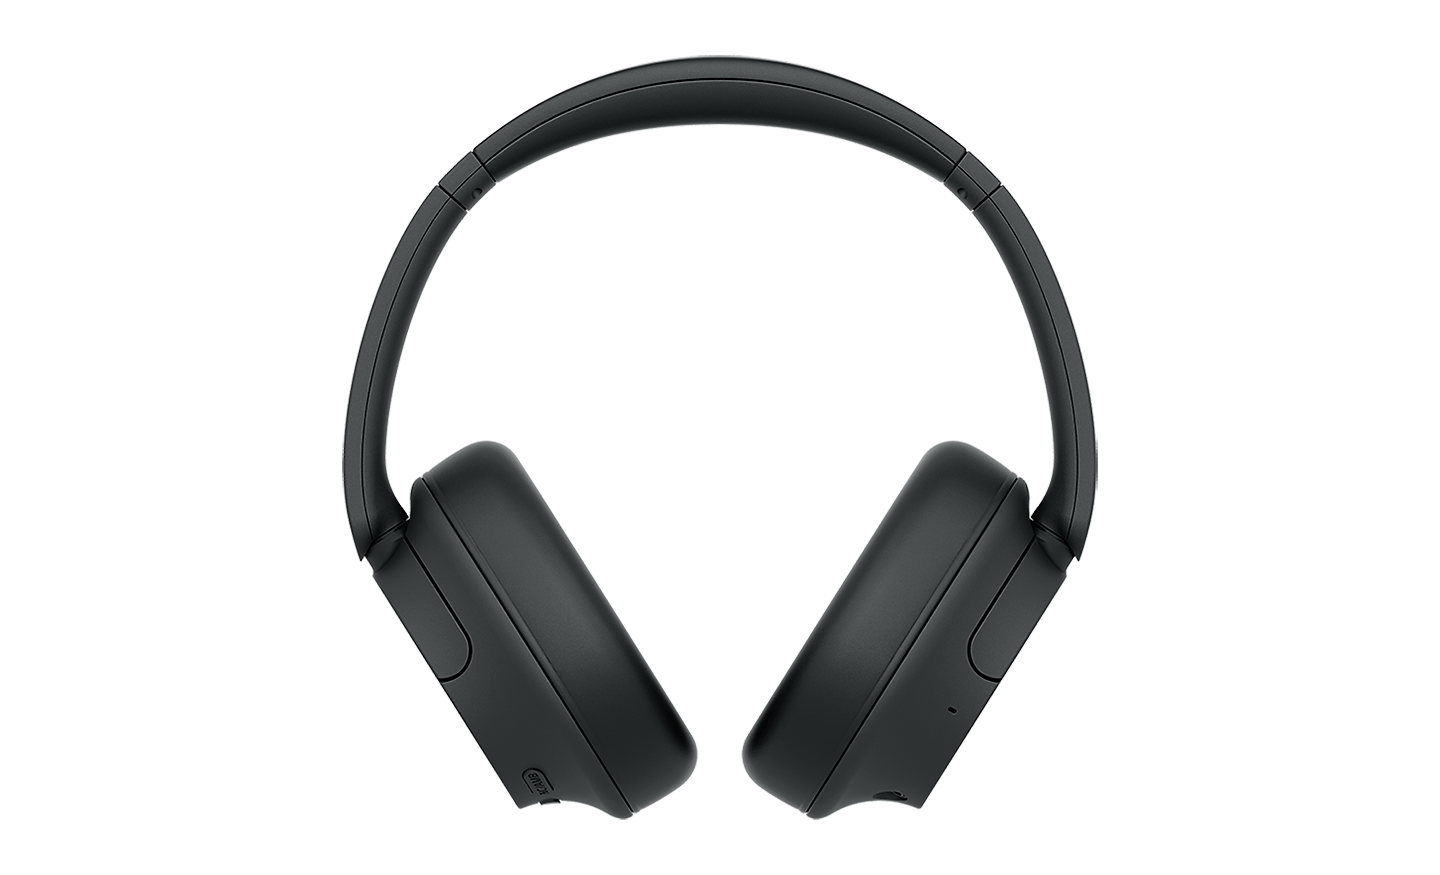 Bild der schwarzen WH-CH720 Kopfhörer von Sony auf weißem Hintergrund